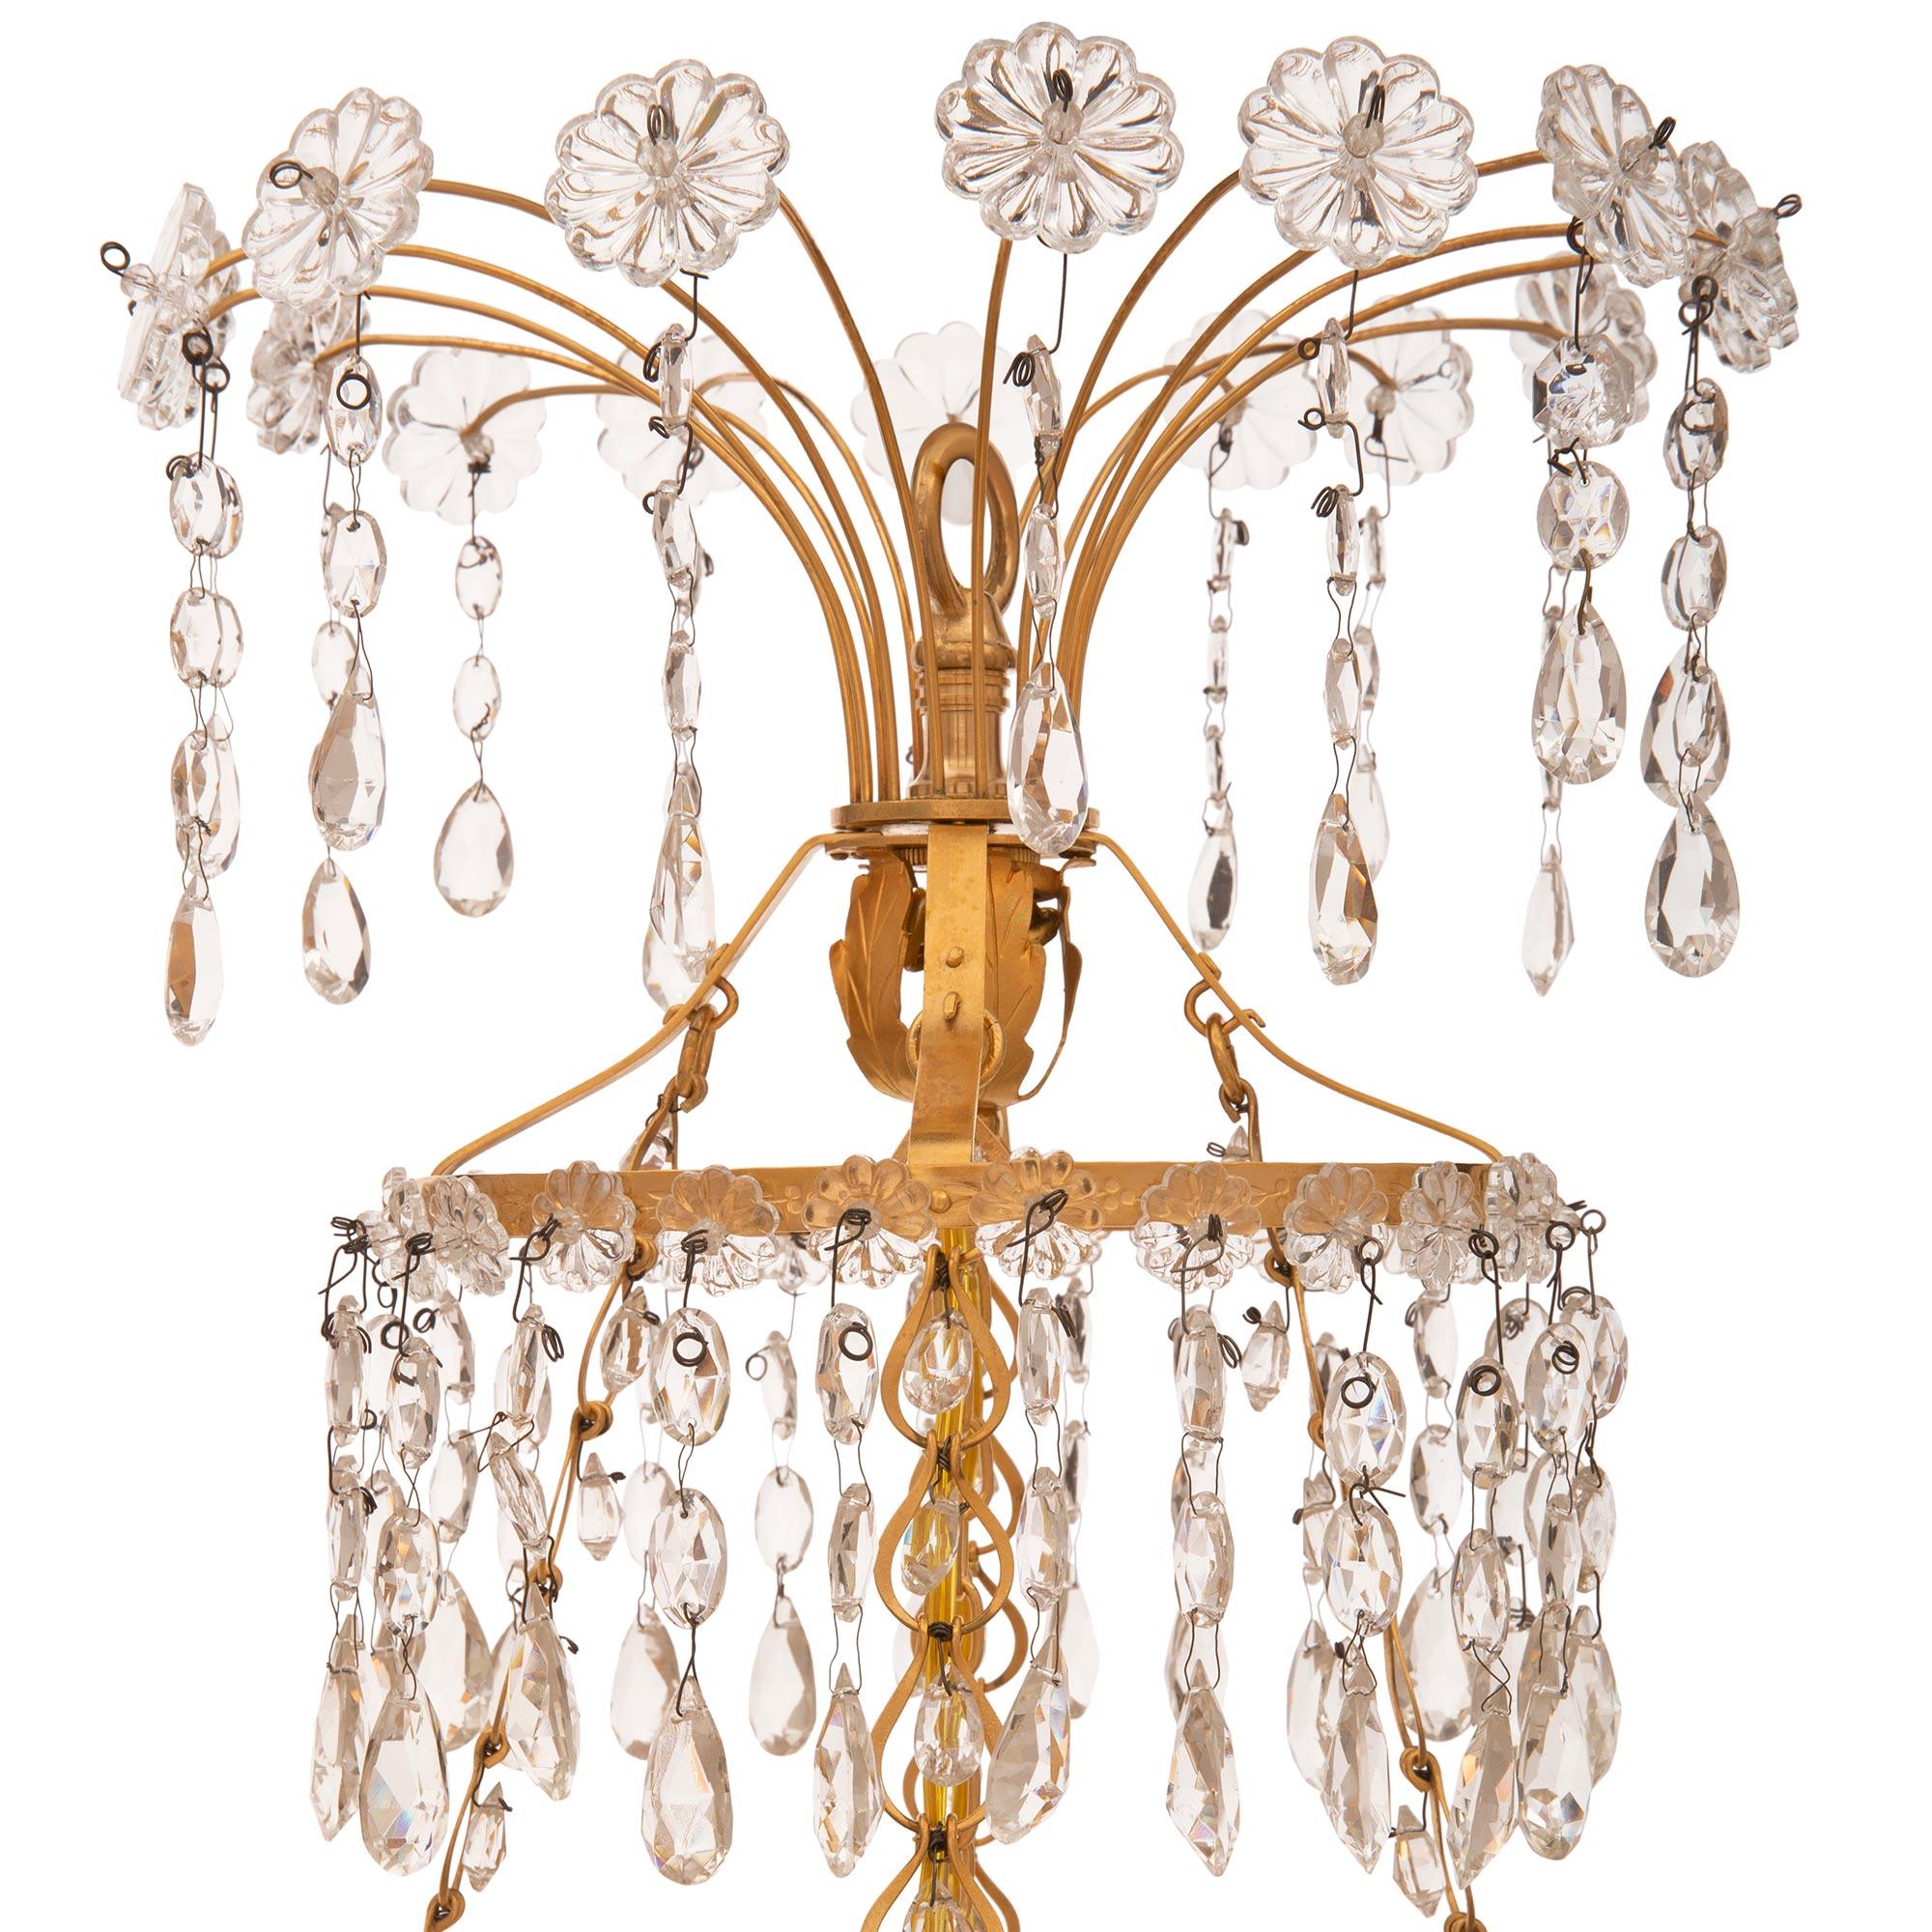 Exceptionnel et très décoratif lustre russe néo-classique du 19ème siècle en bronze doré, cristal et verre vert. Le lustre à six bras est centré par un épi de faîtage en forme de gland richement ciselé et un superbe fut central vert émeraude soufflé